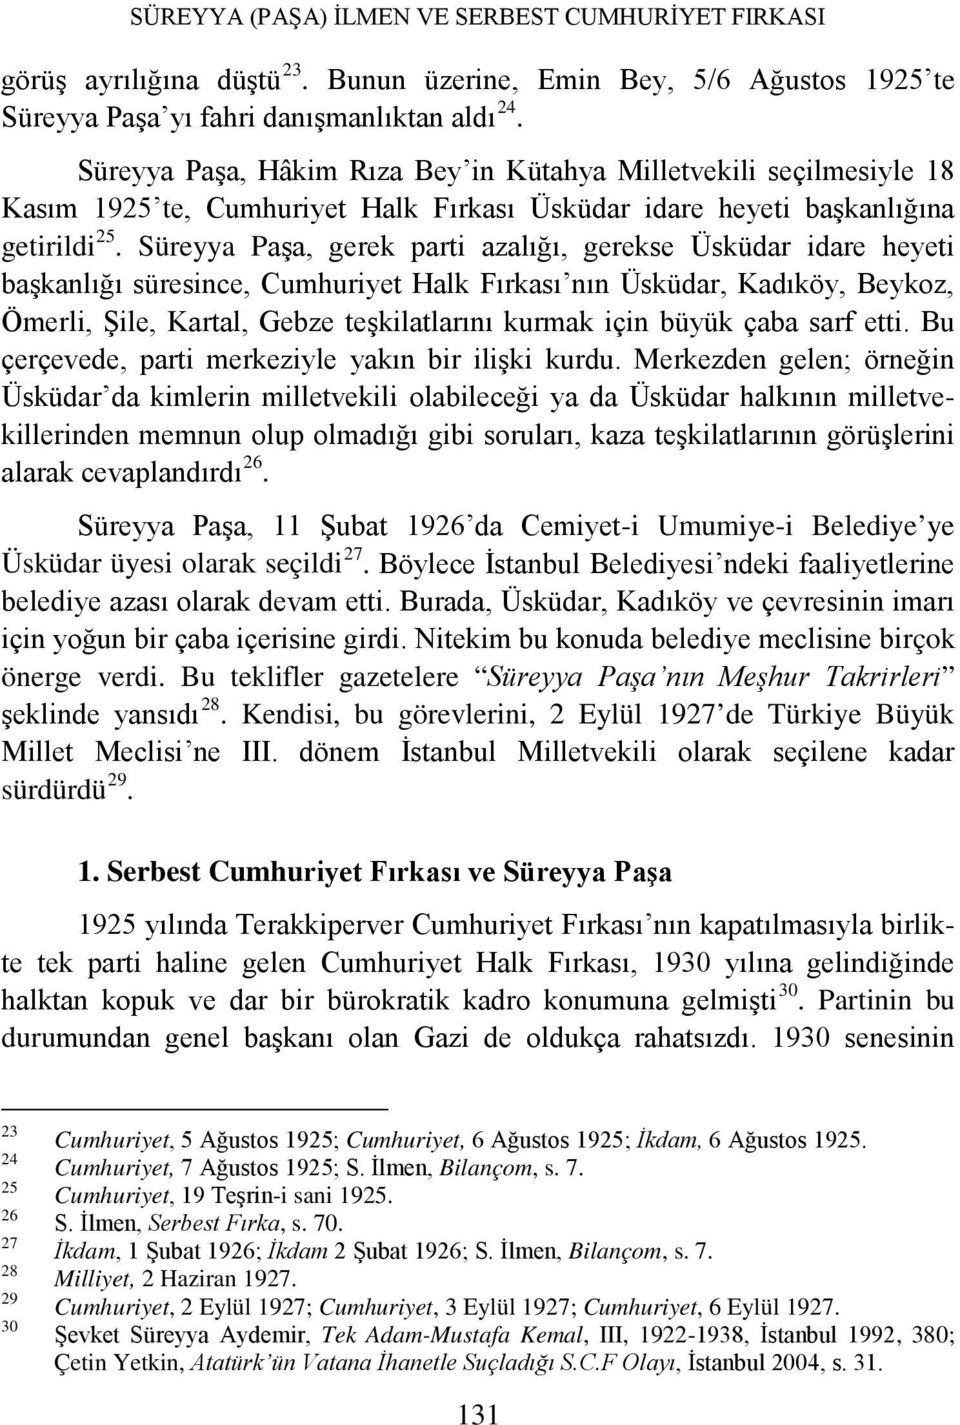 Süreyya Paşa, gerek parti azalığı, gerekse Üsküdar idare heyeti başkanlığı süresince, Cumhuriyet Halk Fırkası nın Üsküdar, Kadıköy, Beykoz, Ömerli, Şile, Kartal, Gebze teşkilatlarını kurmak için